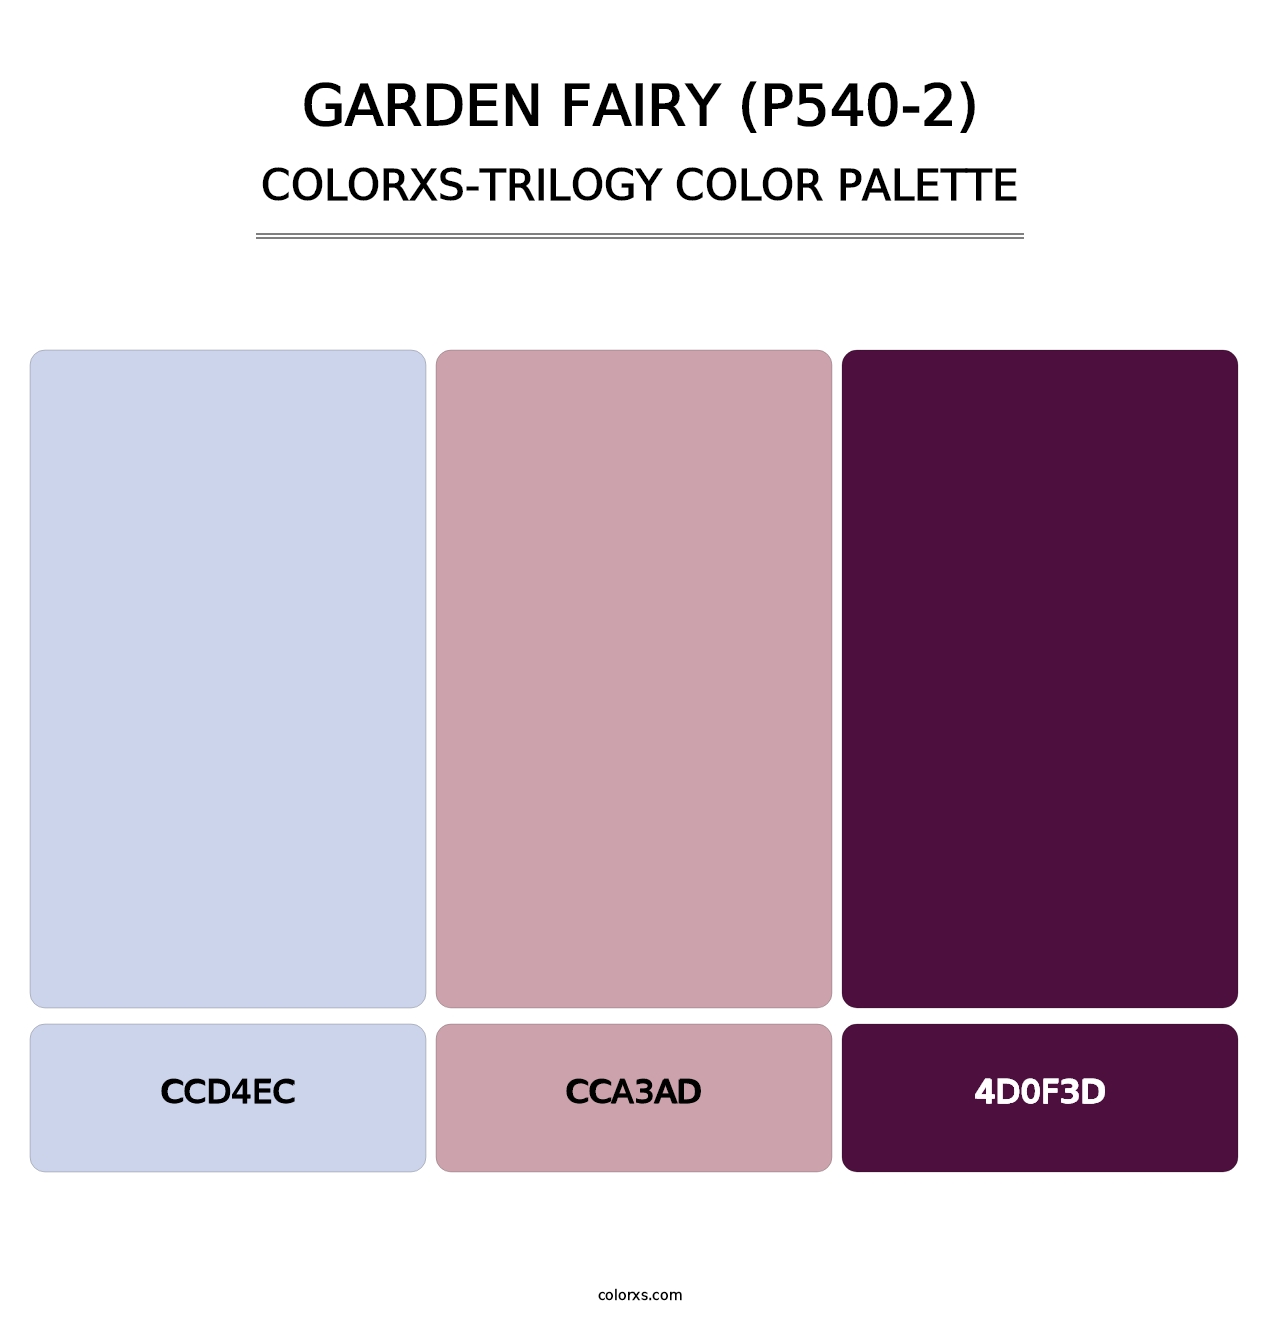 Garden Fairy (P540-2) - Colorxs Trilogy Palette